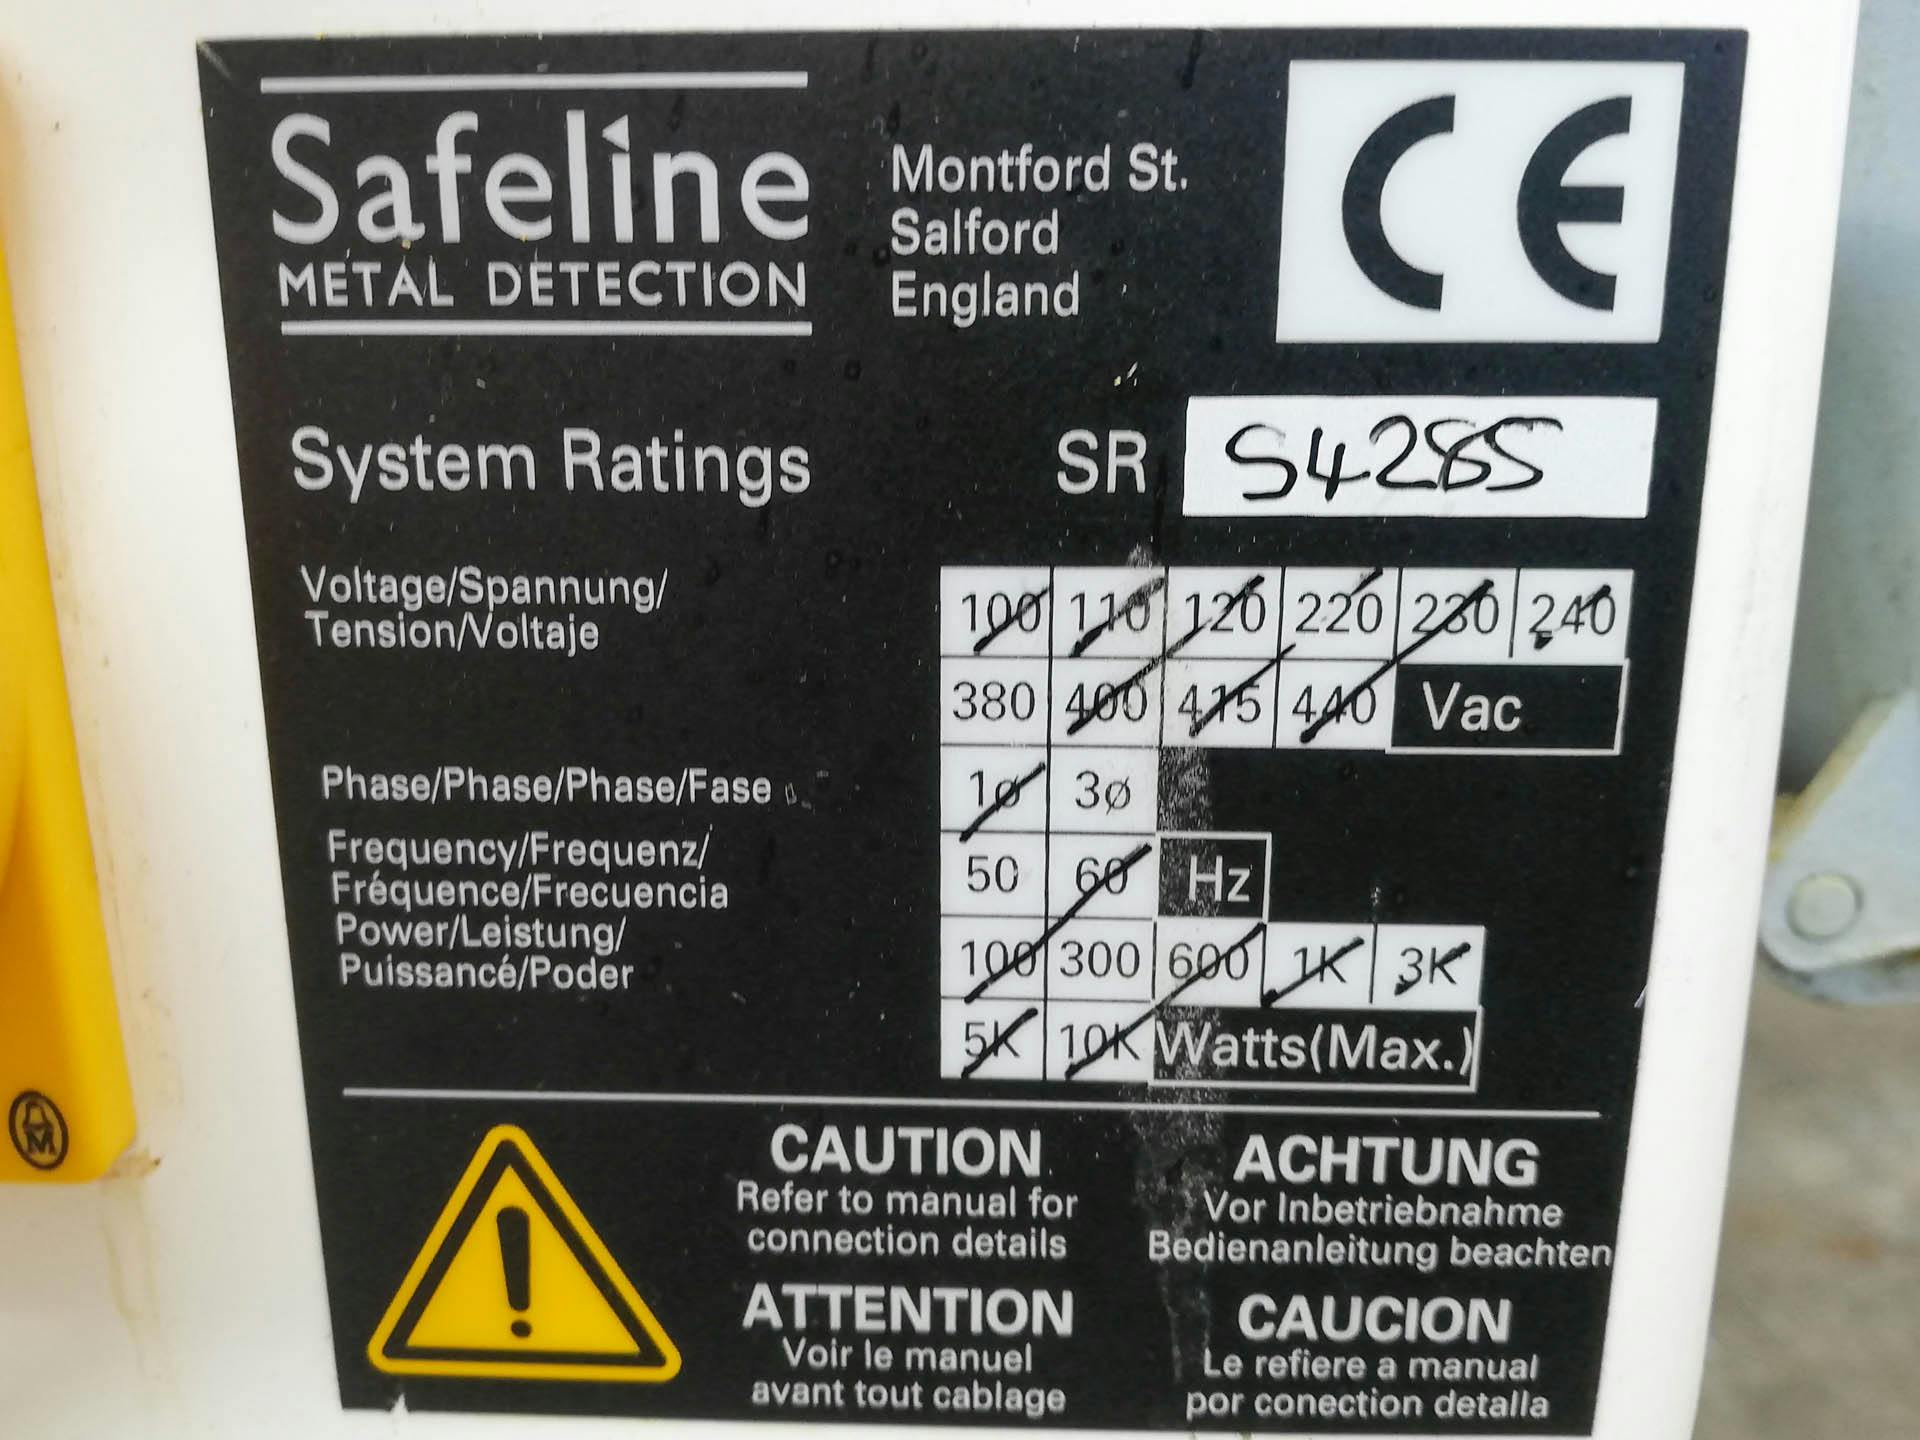 Safeline Uk Signature 2 - Металлодетектор - image 5